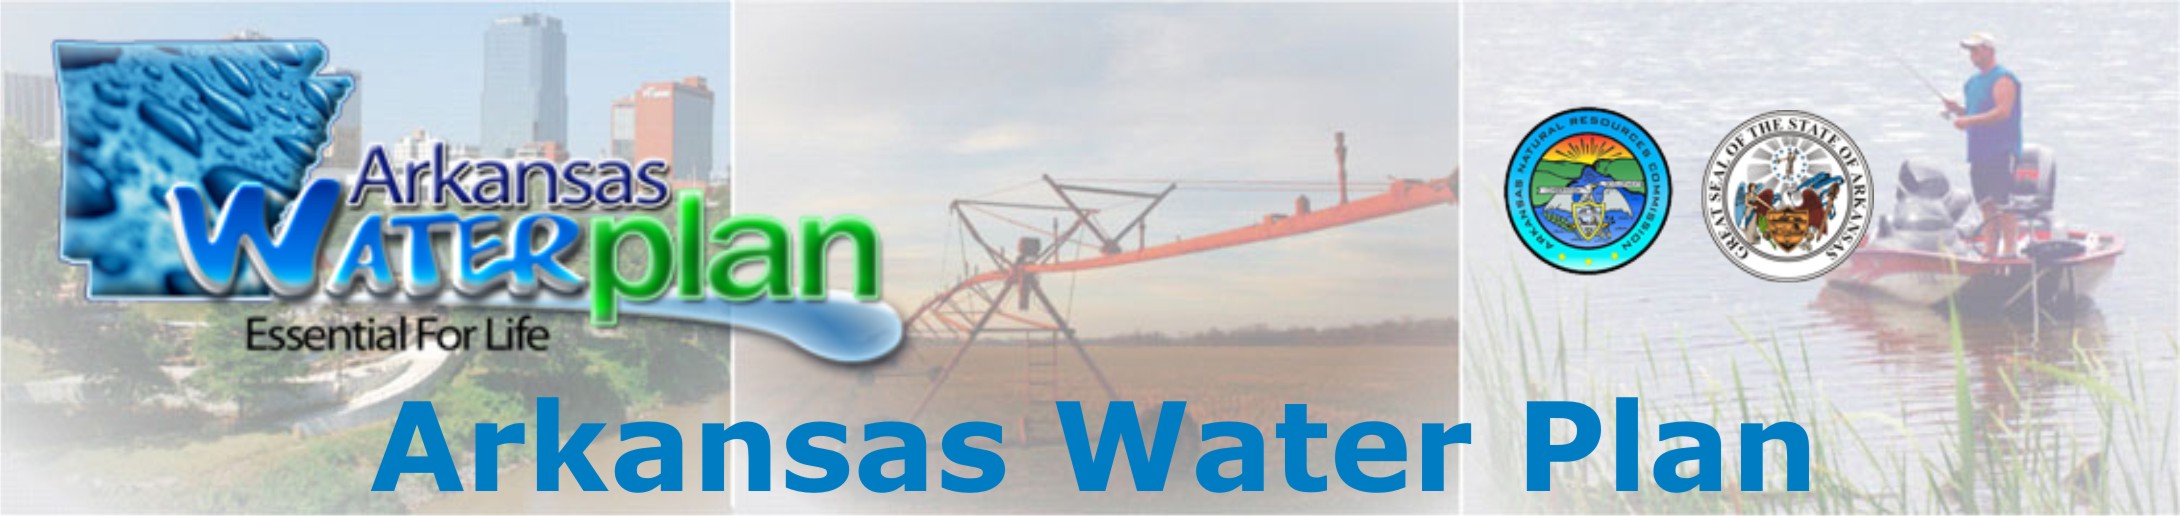 Arkansas Water Plan Banner